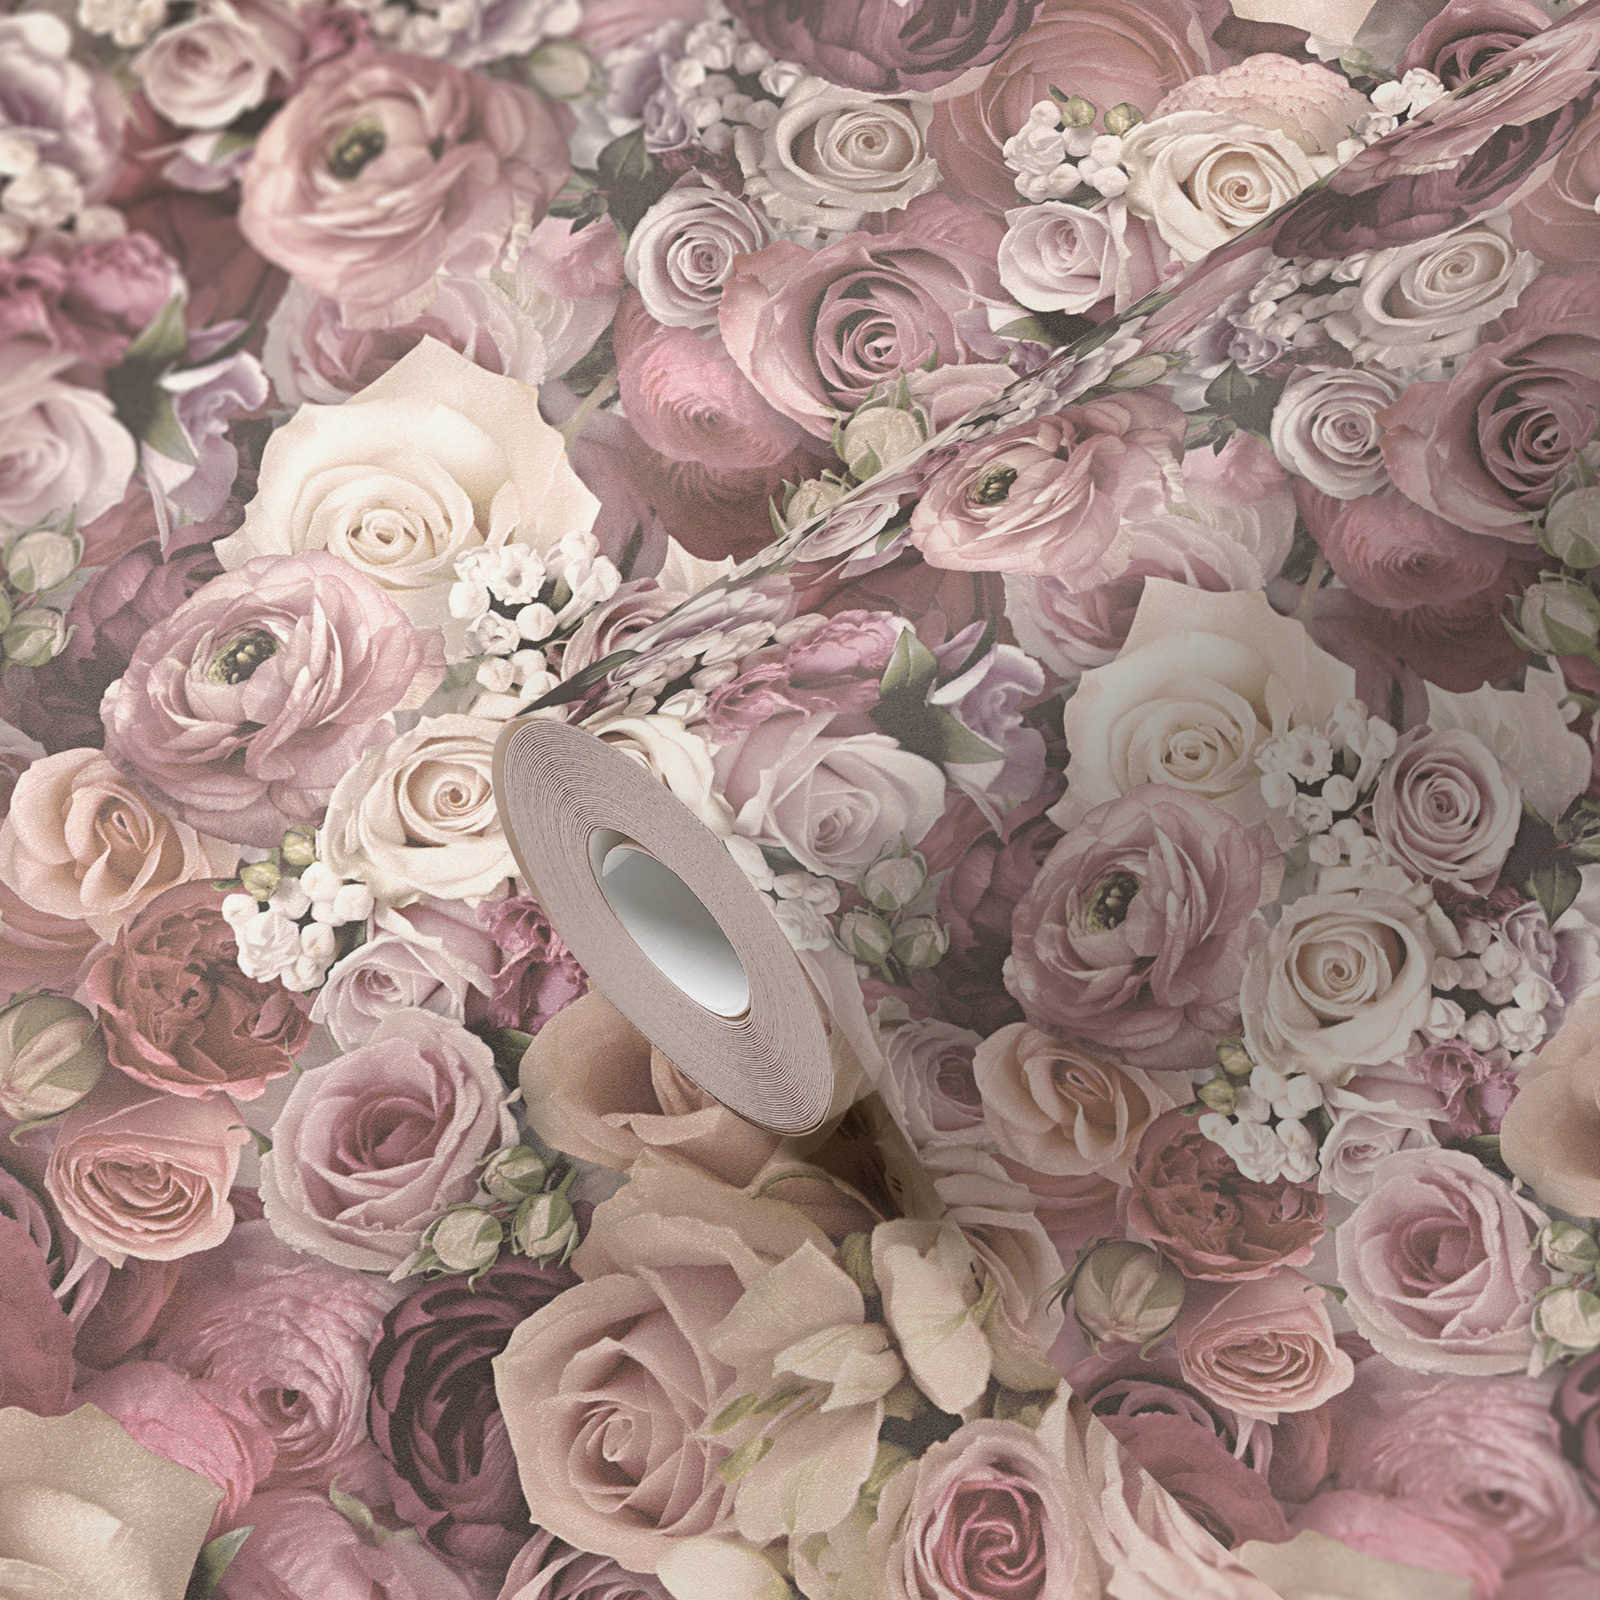             rose di carta da parati in un delicato mare di fiori rosa - crema
        